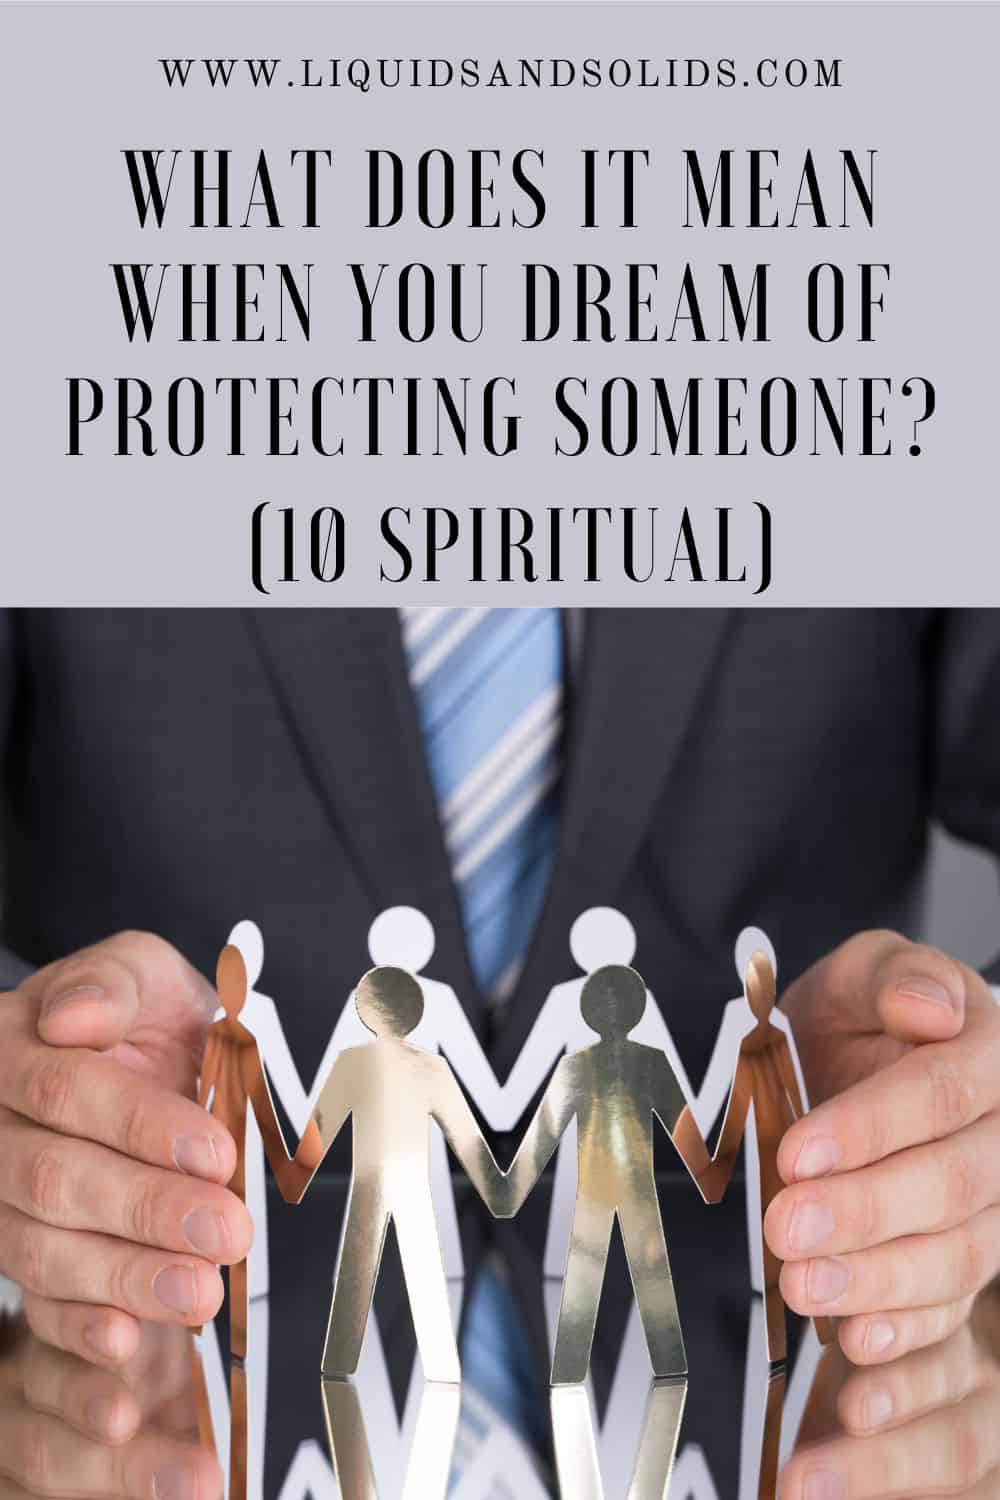  Drøm om at beskytte nogen? (10 spirituelle betydninger)